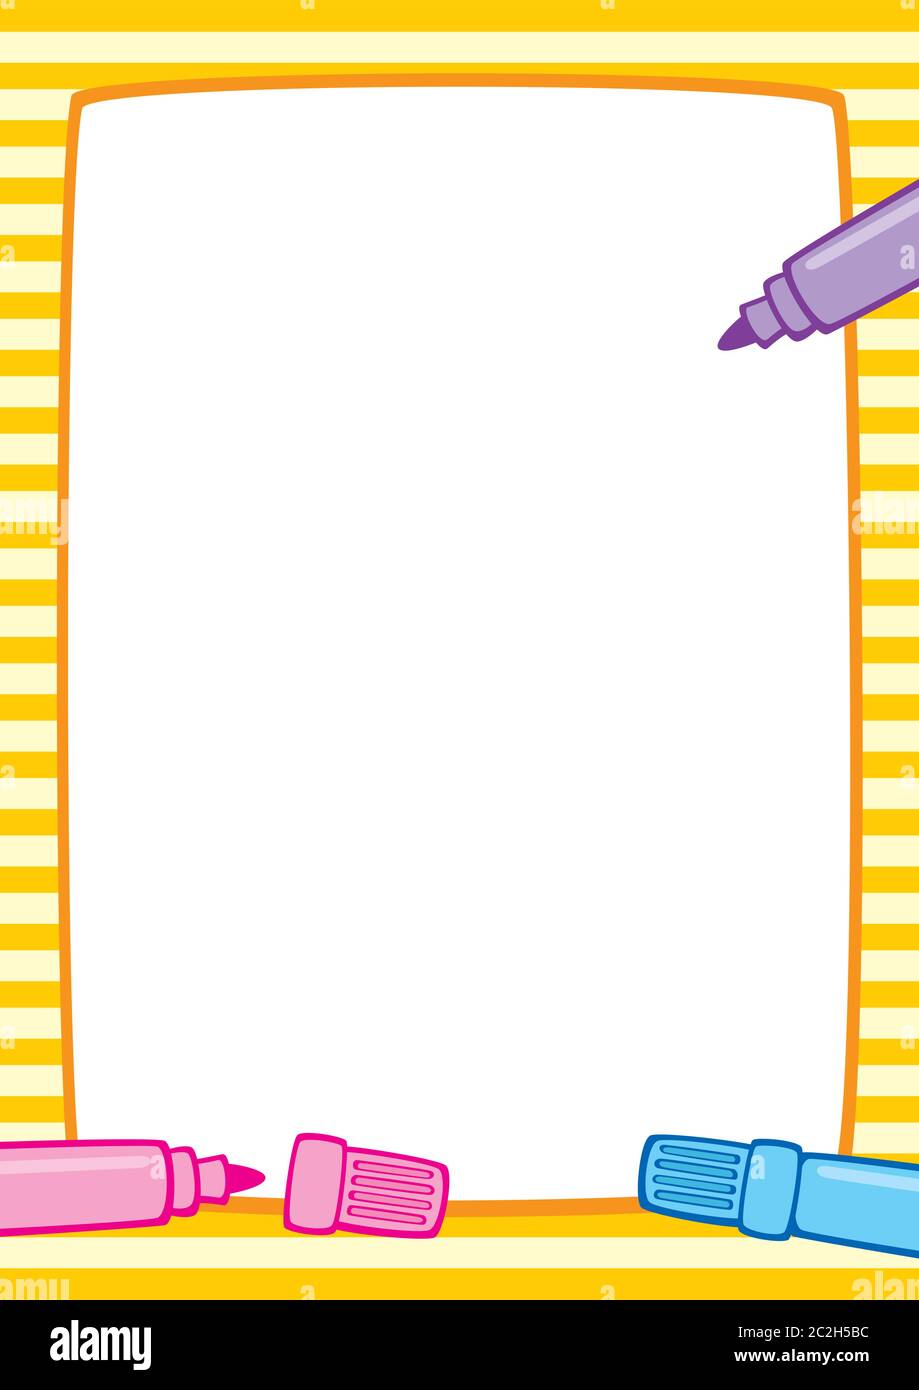 Vektor bunte Illustration eines gelb gestreiften Rahmen und drei Marker Stifte: Rosa, hellblau und lila. Platzieren Sie für Text auf einem weißen Hintergrund. A4. Stock Vektor